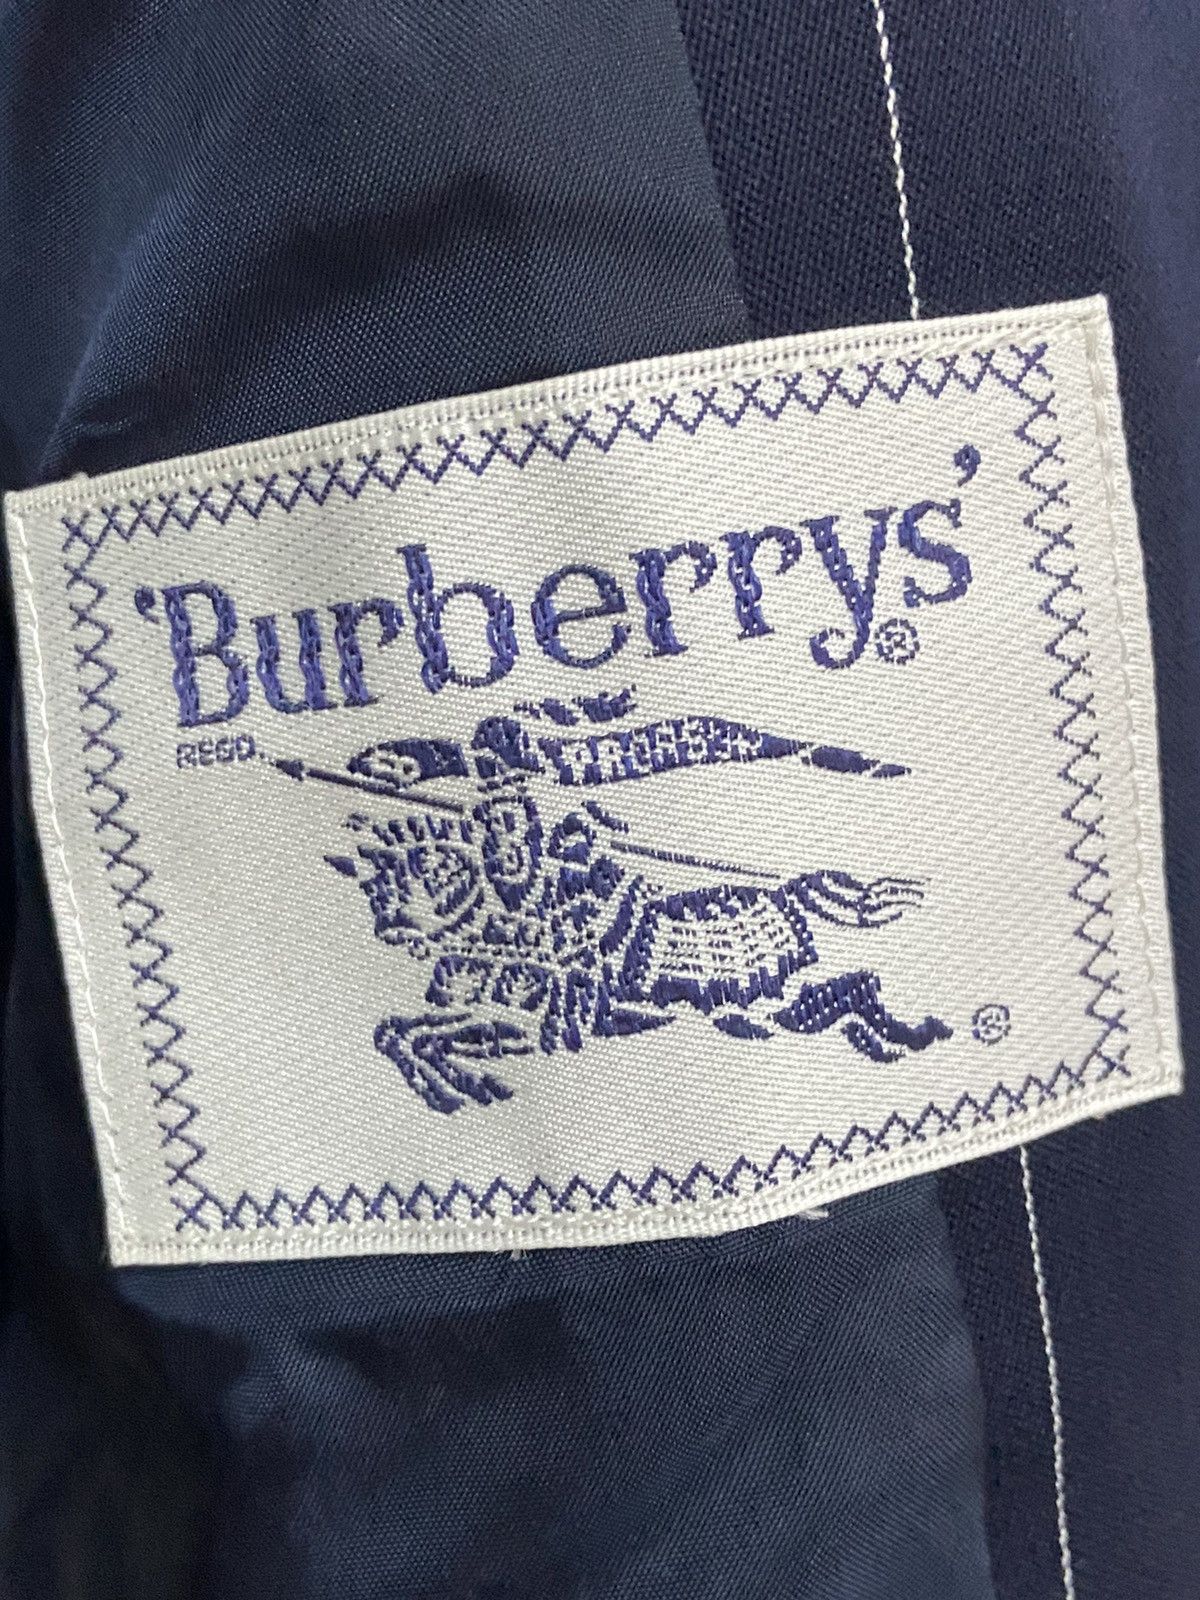 Burberrys Striped Blazer Size 38 - 4